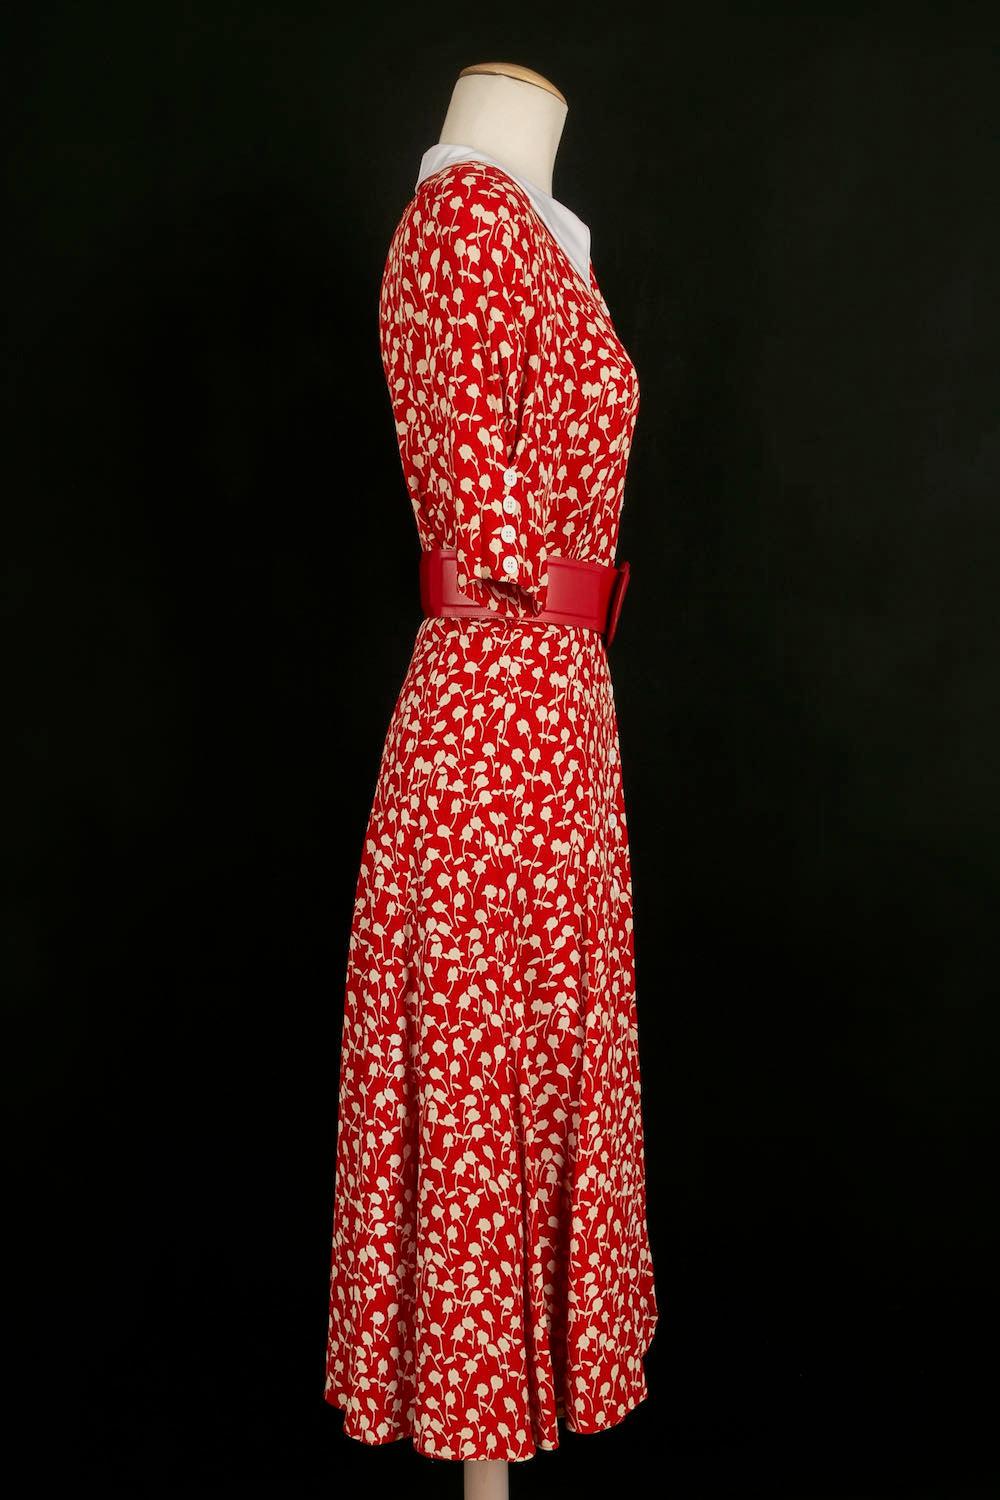 Louis Féraud -(Made in Germany) Robe rouge avec ceinture en cuir rouge. Taille indiquée 38FR.

Informations complémentaires : 
Dimensions : Largeur des épaules : 37 cm, poitrine : 44 cm, taille : 31 cm
Condit : Très bon état.
Numéro de référence du